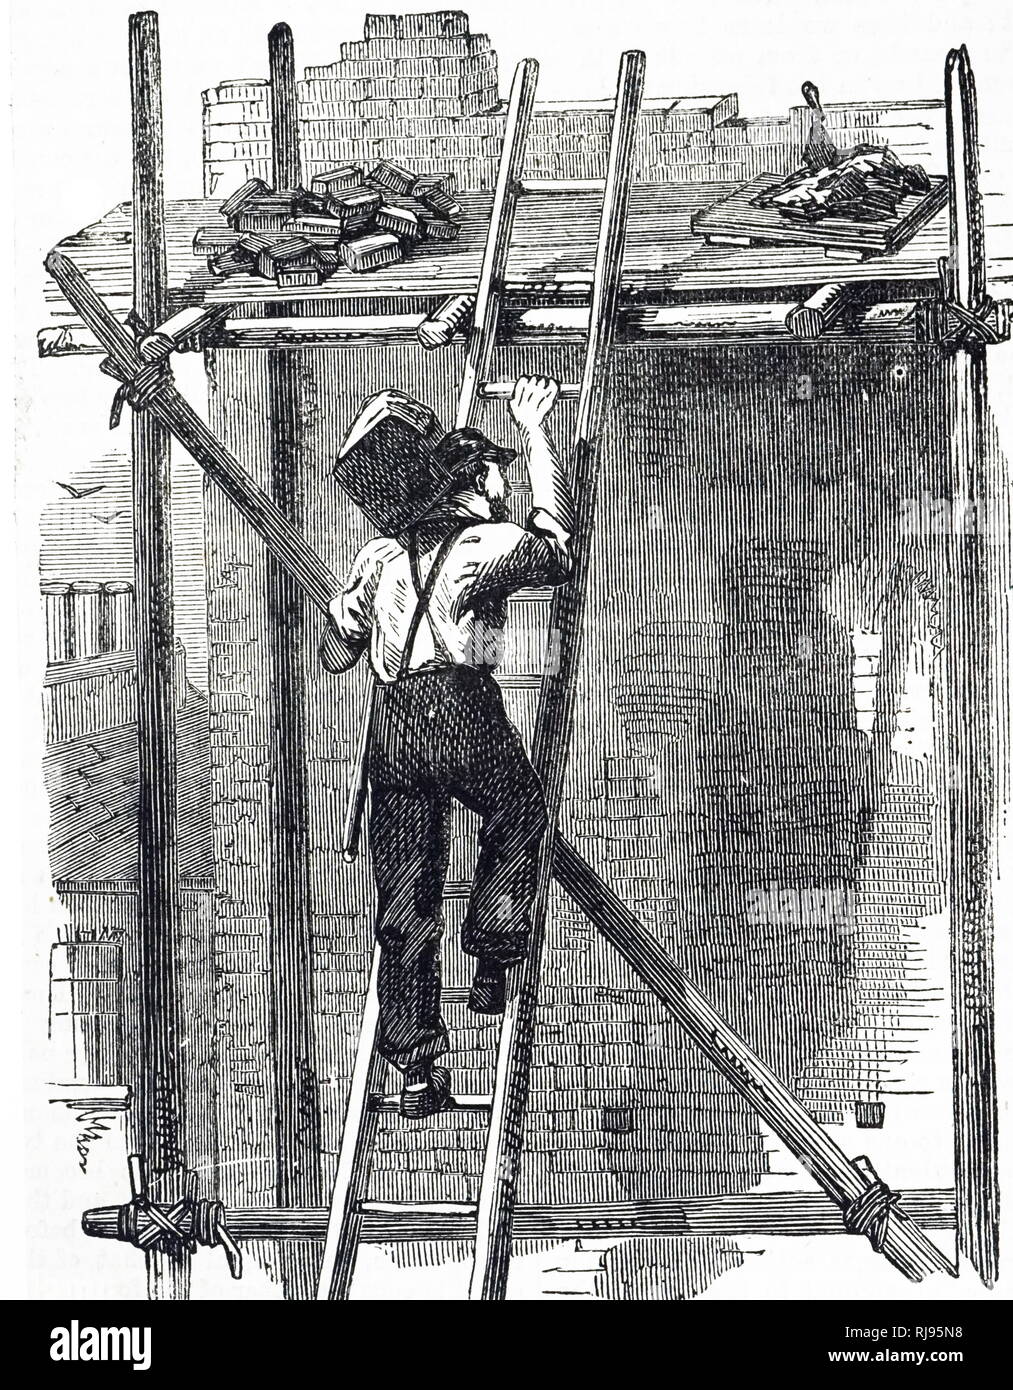 Ilustración mostrando un albañil, con una pierna de madera, llevando una carga Hod con ladrillos de una escalera a una plataforma de trabajo. 1885 Foto de stock